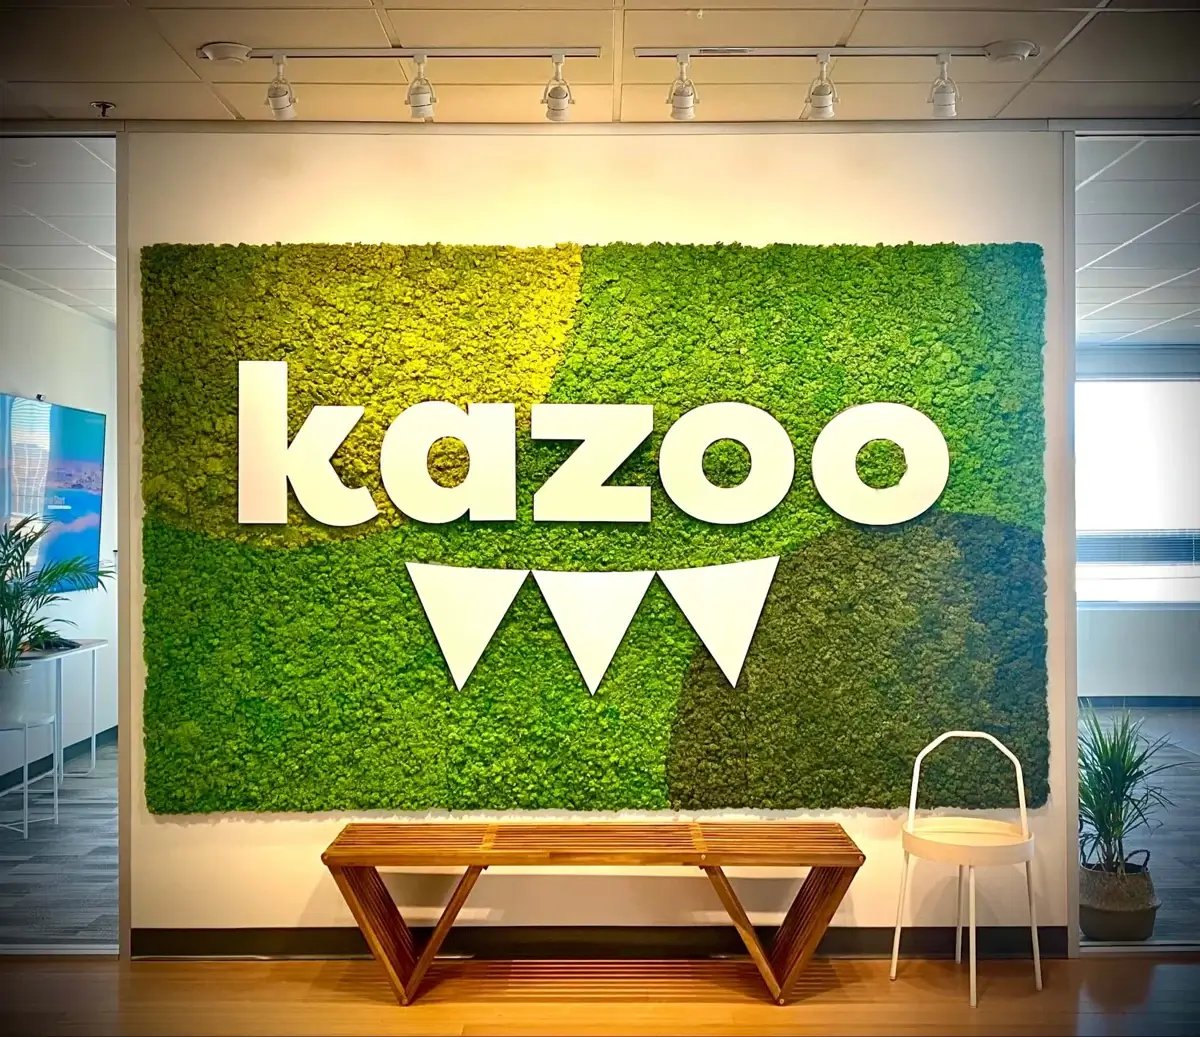 Kazoo-1